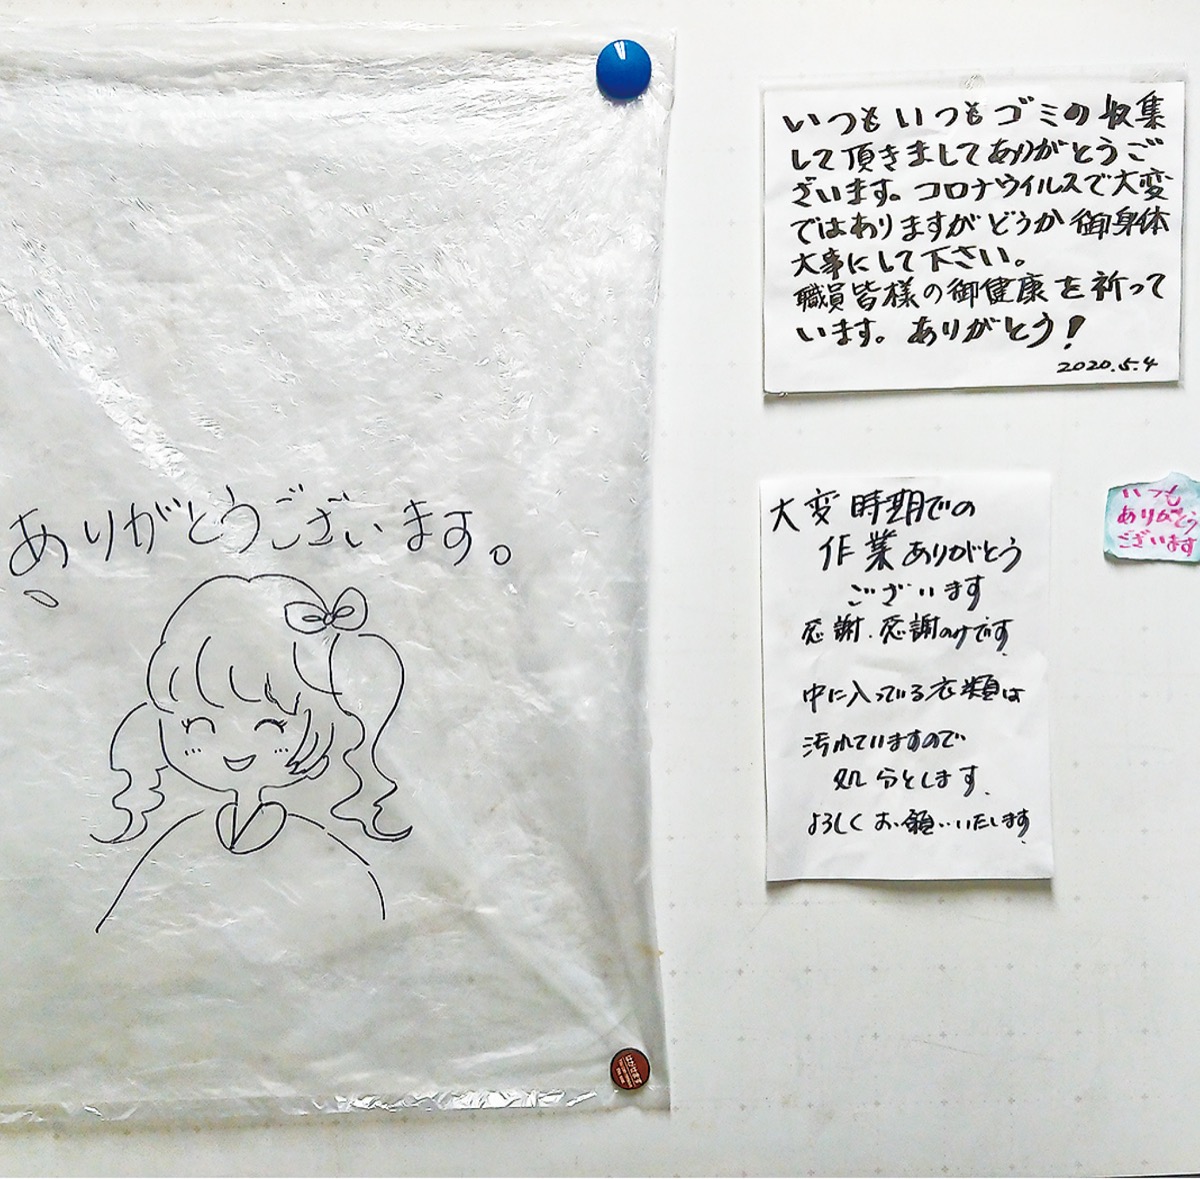 いつも回収ありがとう ごみ袋に応援メッセージ 厚木 愛川 清川 タウンニュース